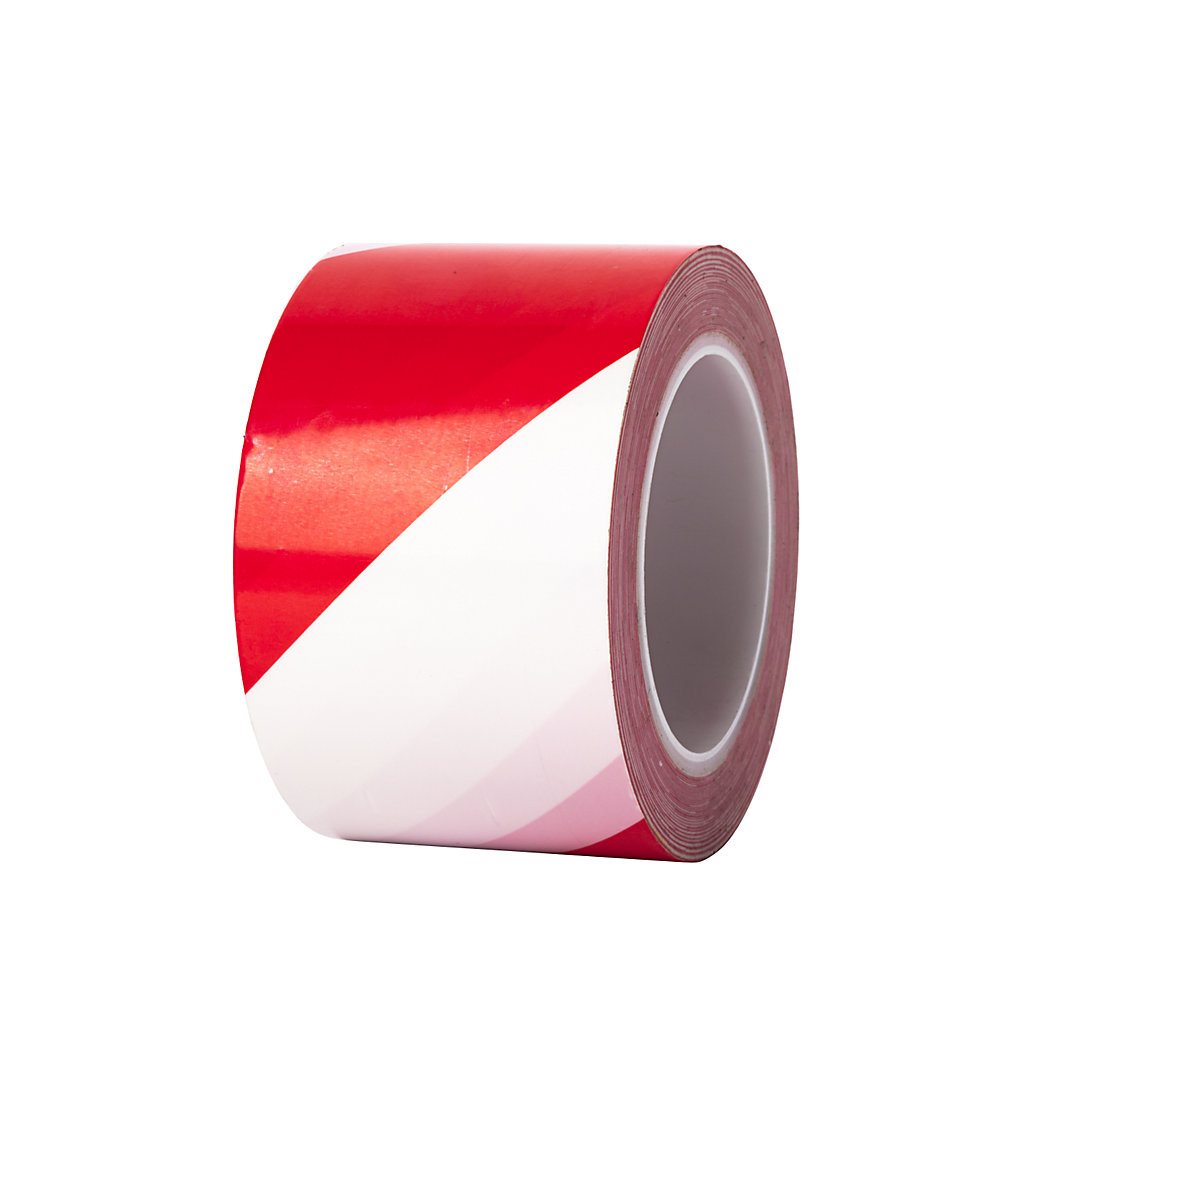 Extraerős padlójelölő szalag – Ampere, szélesség 50 mm, vastagság 0,2 mm, piros/fehér-2